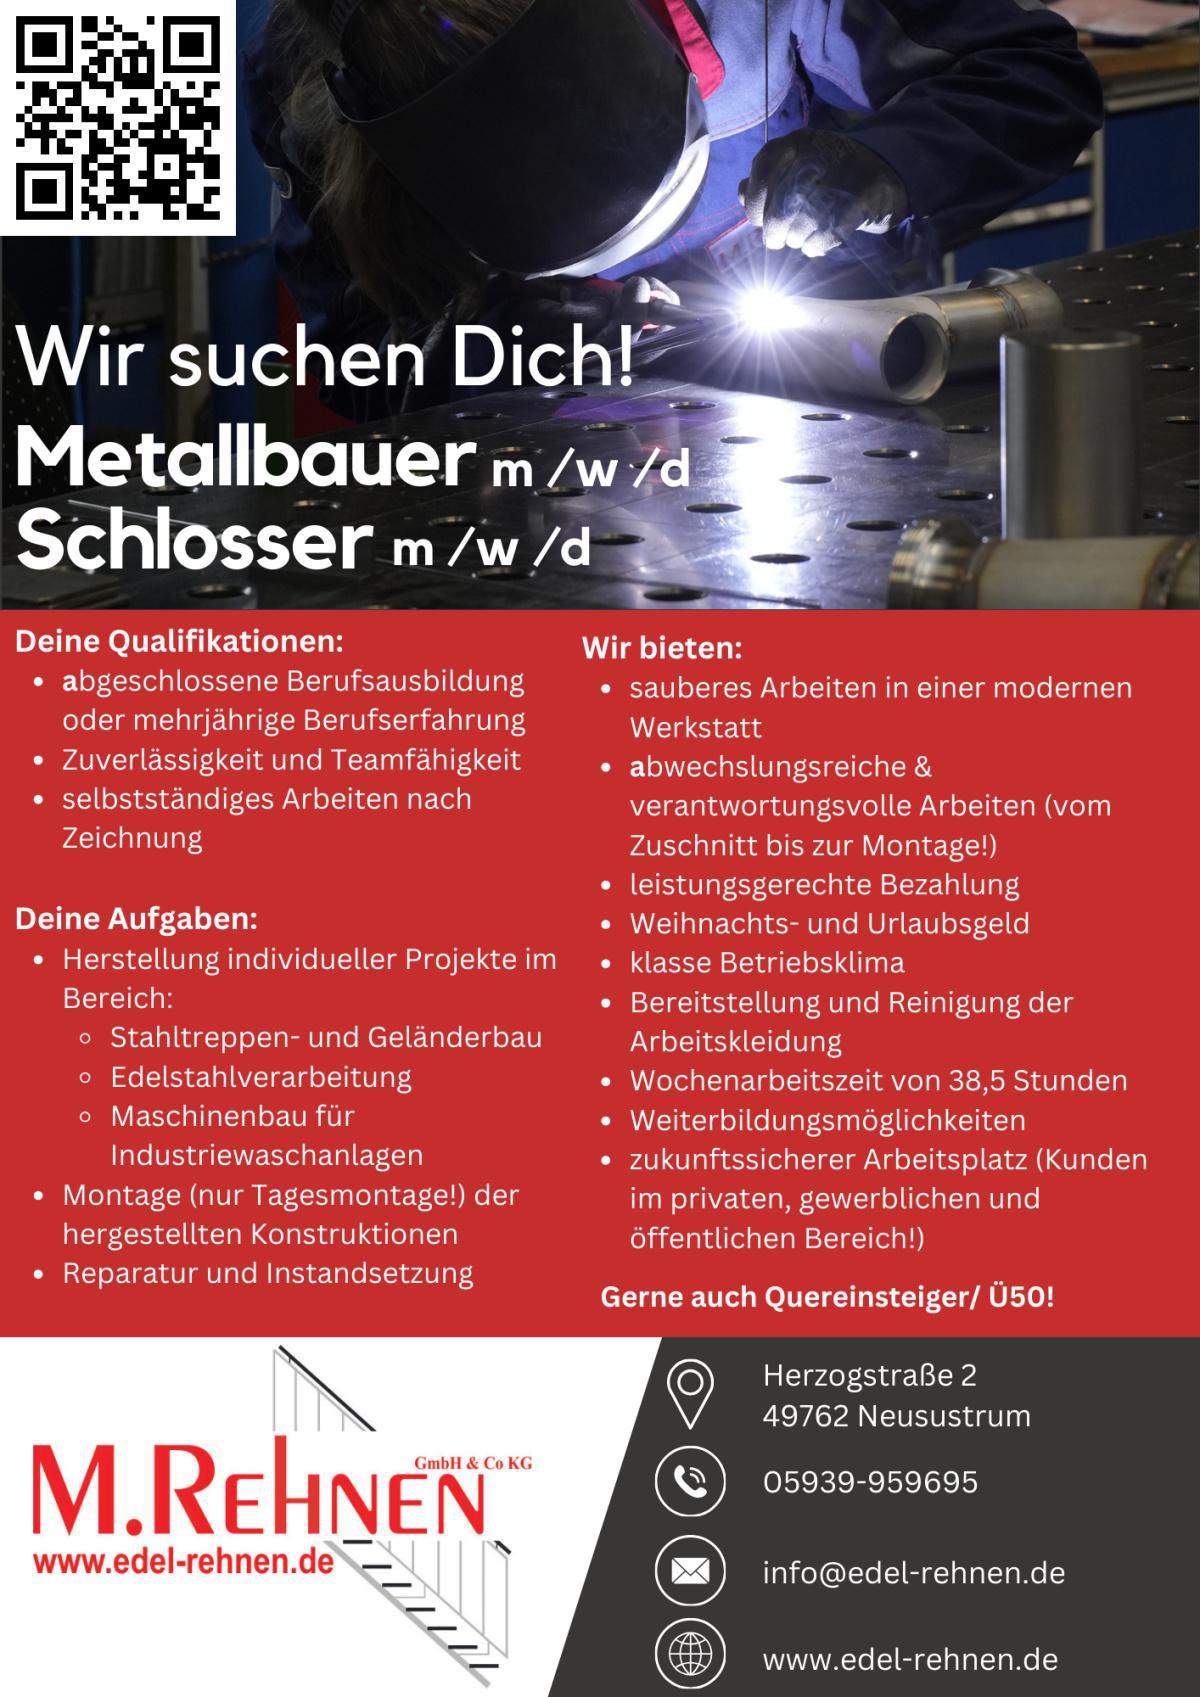 Metallbauer und Schlosser m/w/d